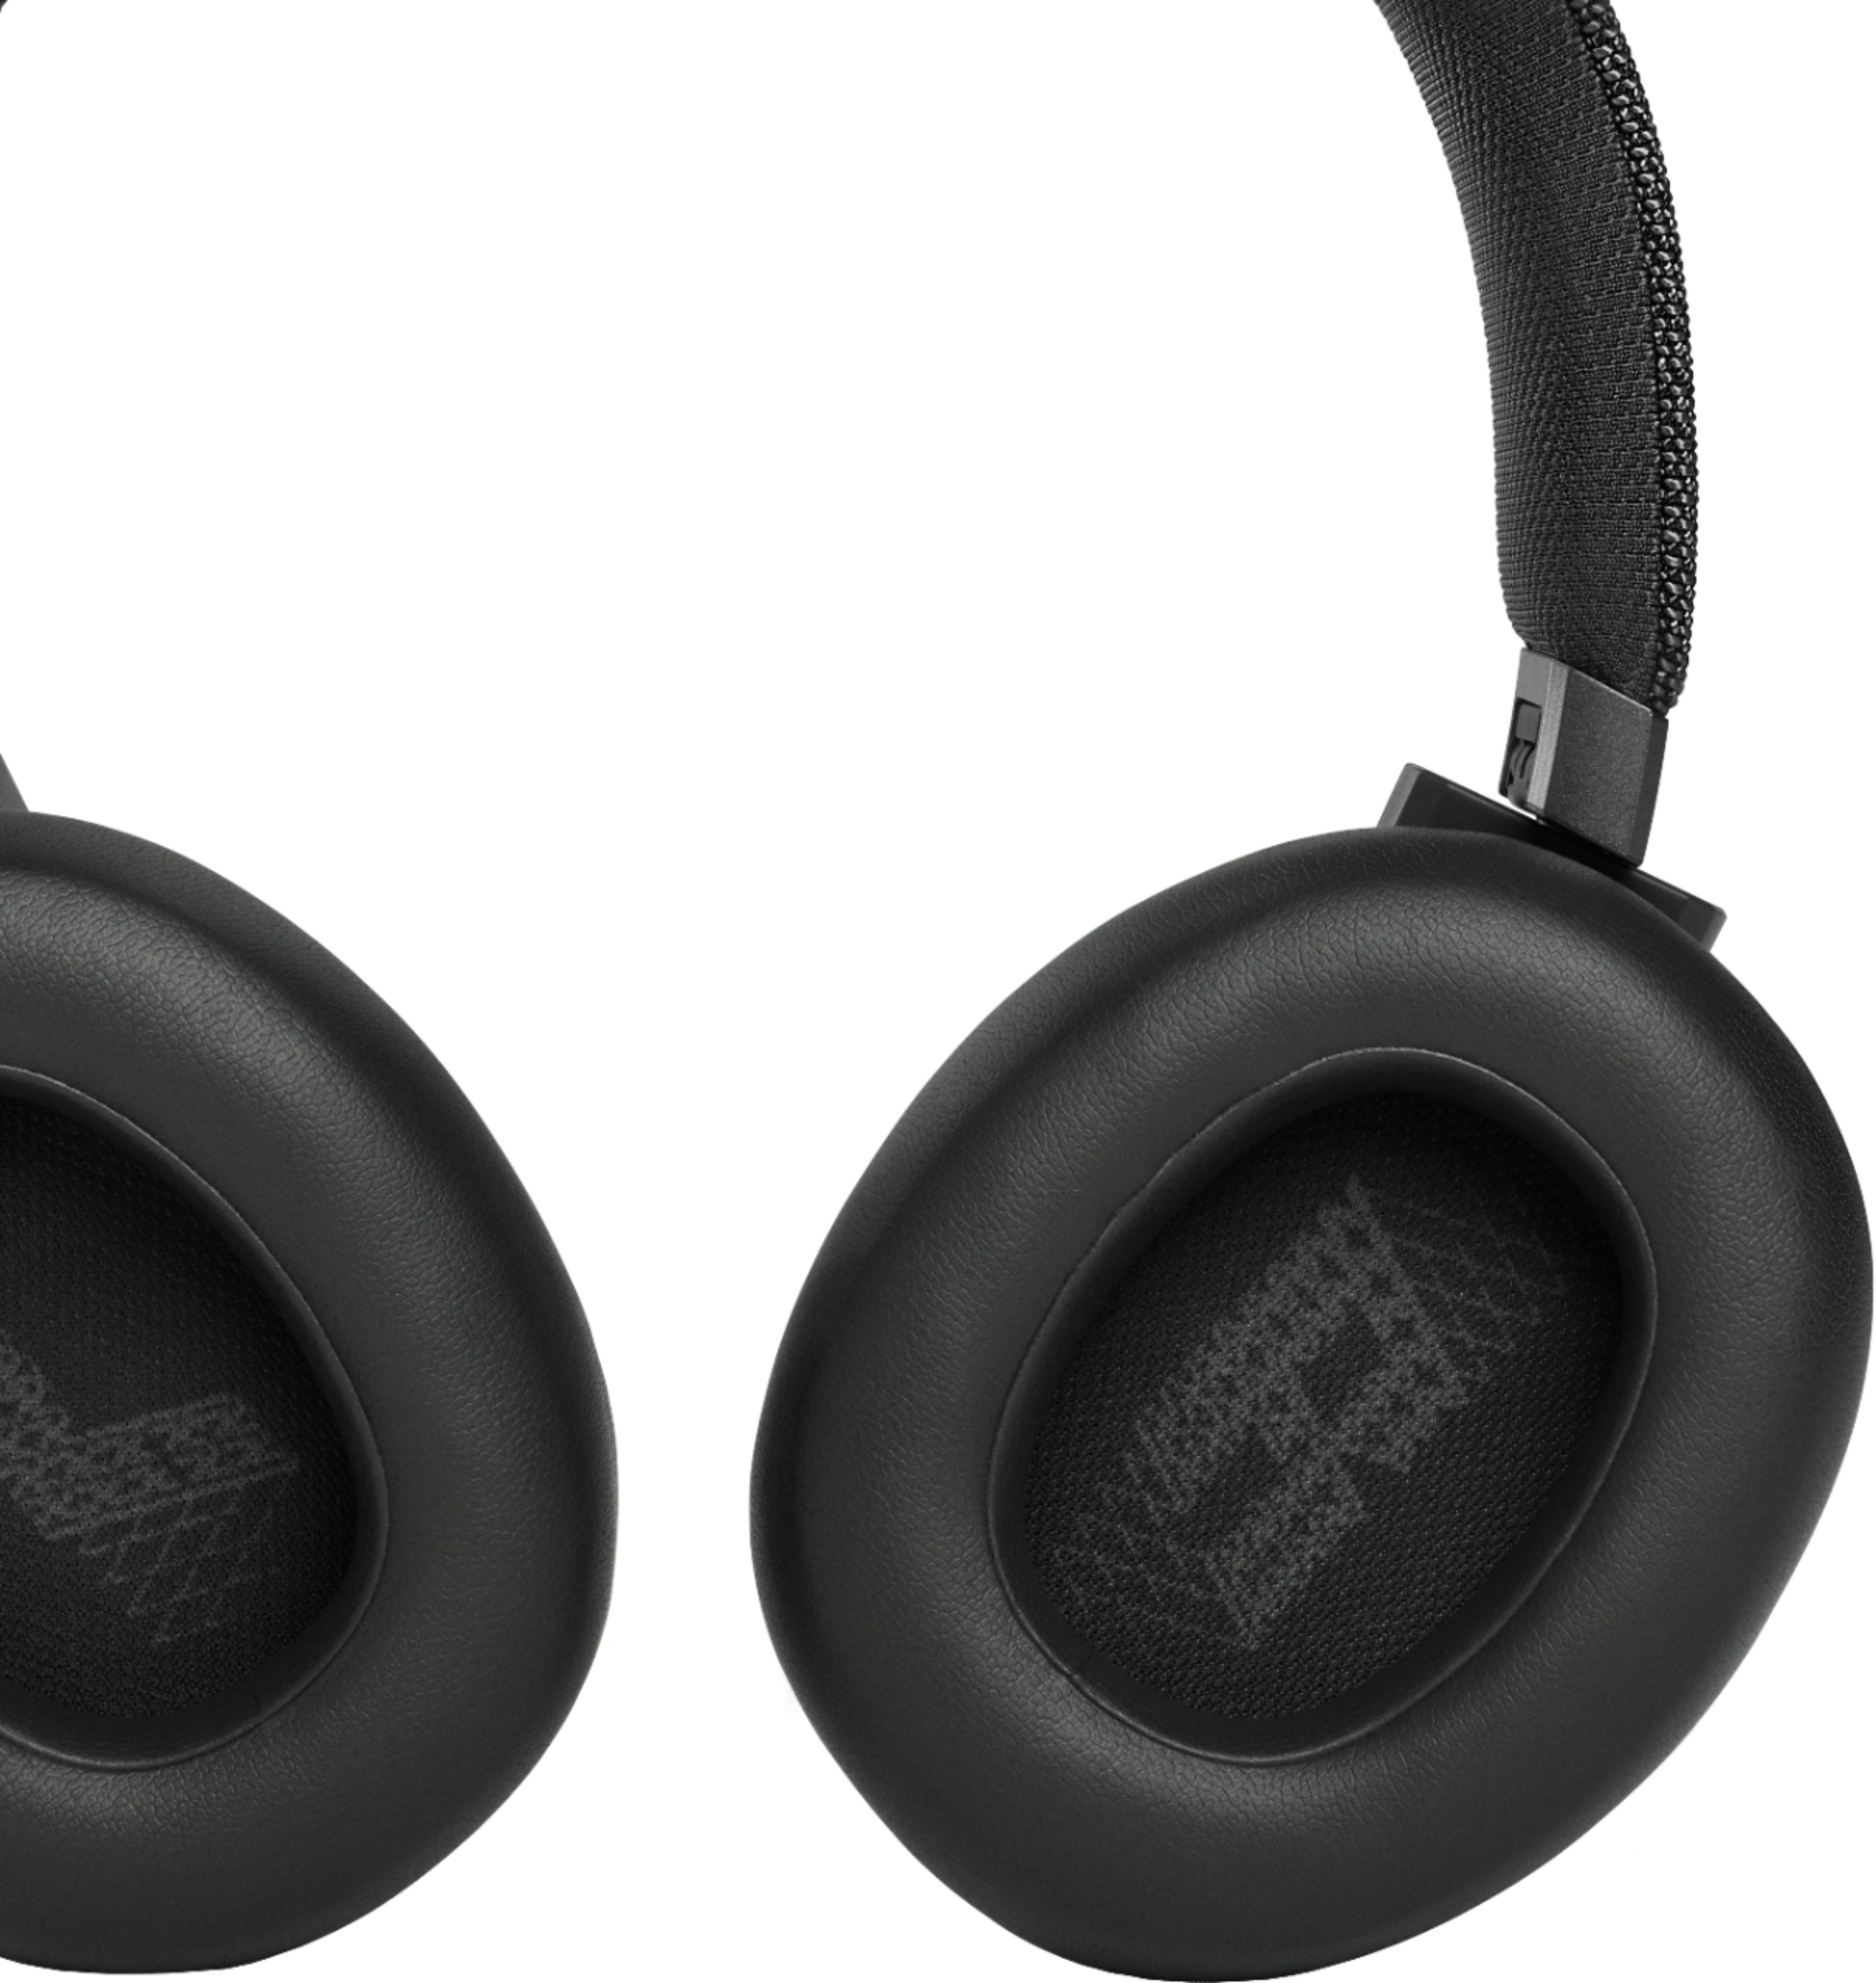 JBL JBLLIVE460NCBLKAM Wireless On-Ear Noise Cancelling Headphones in